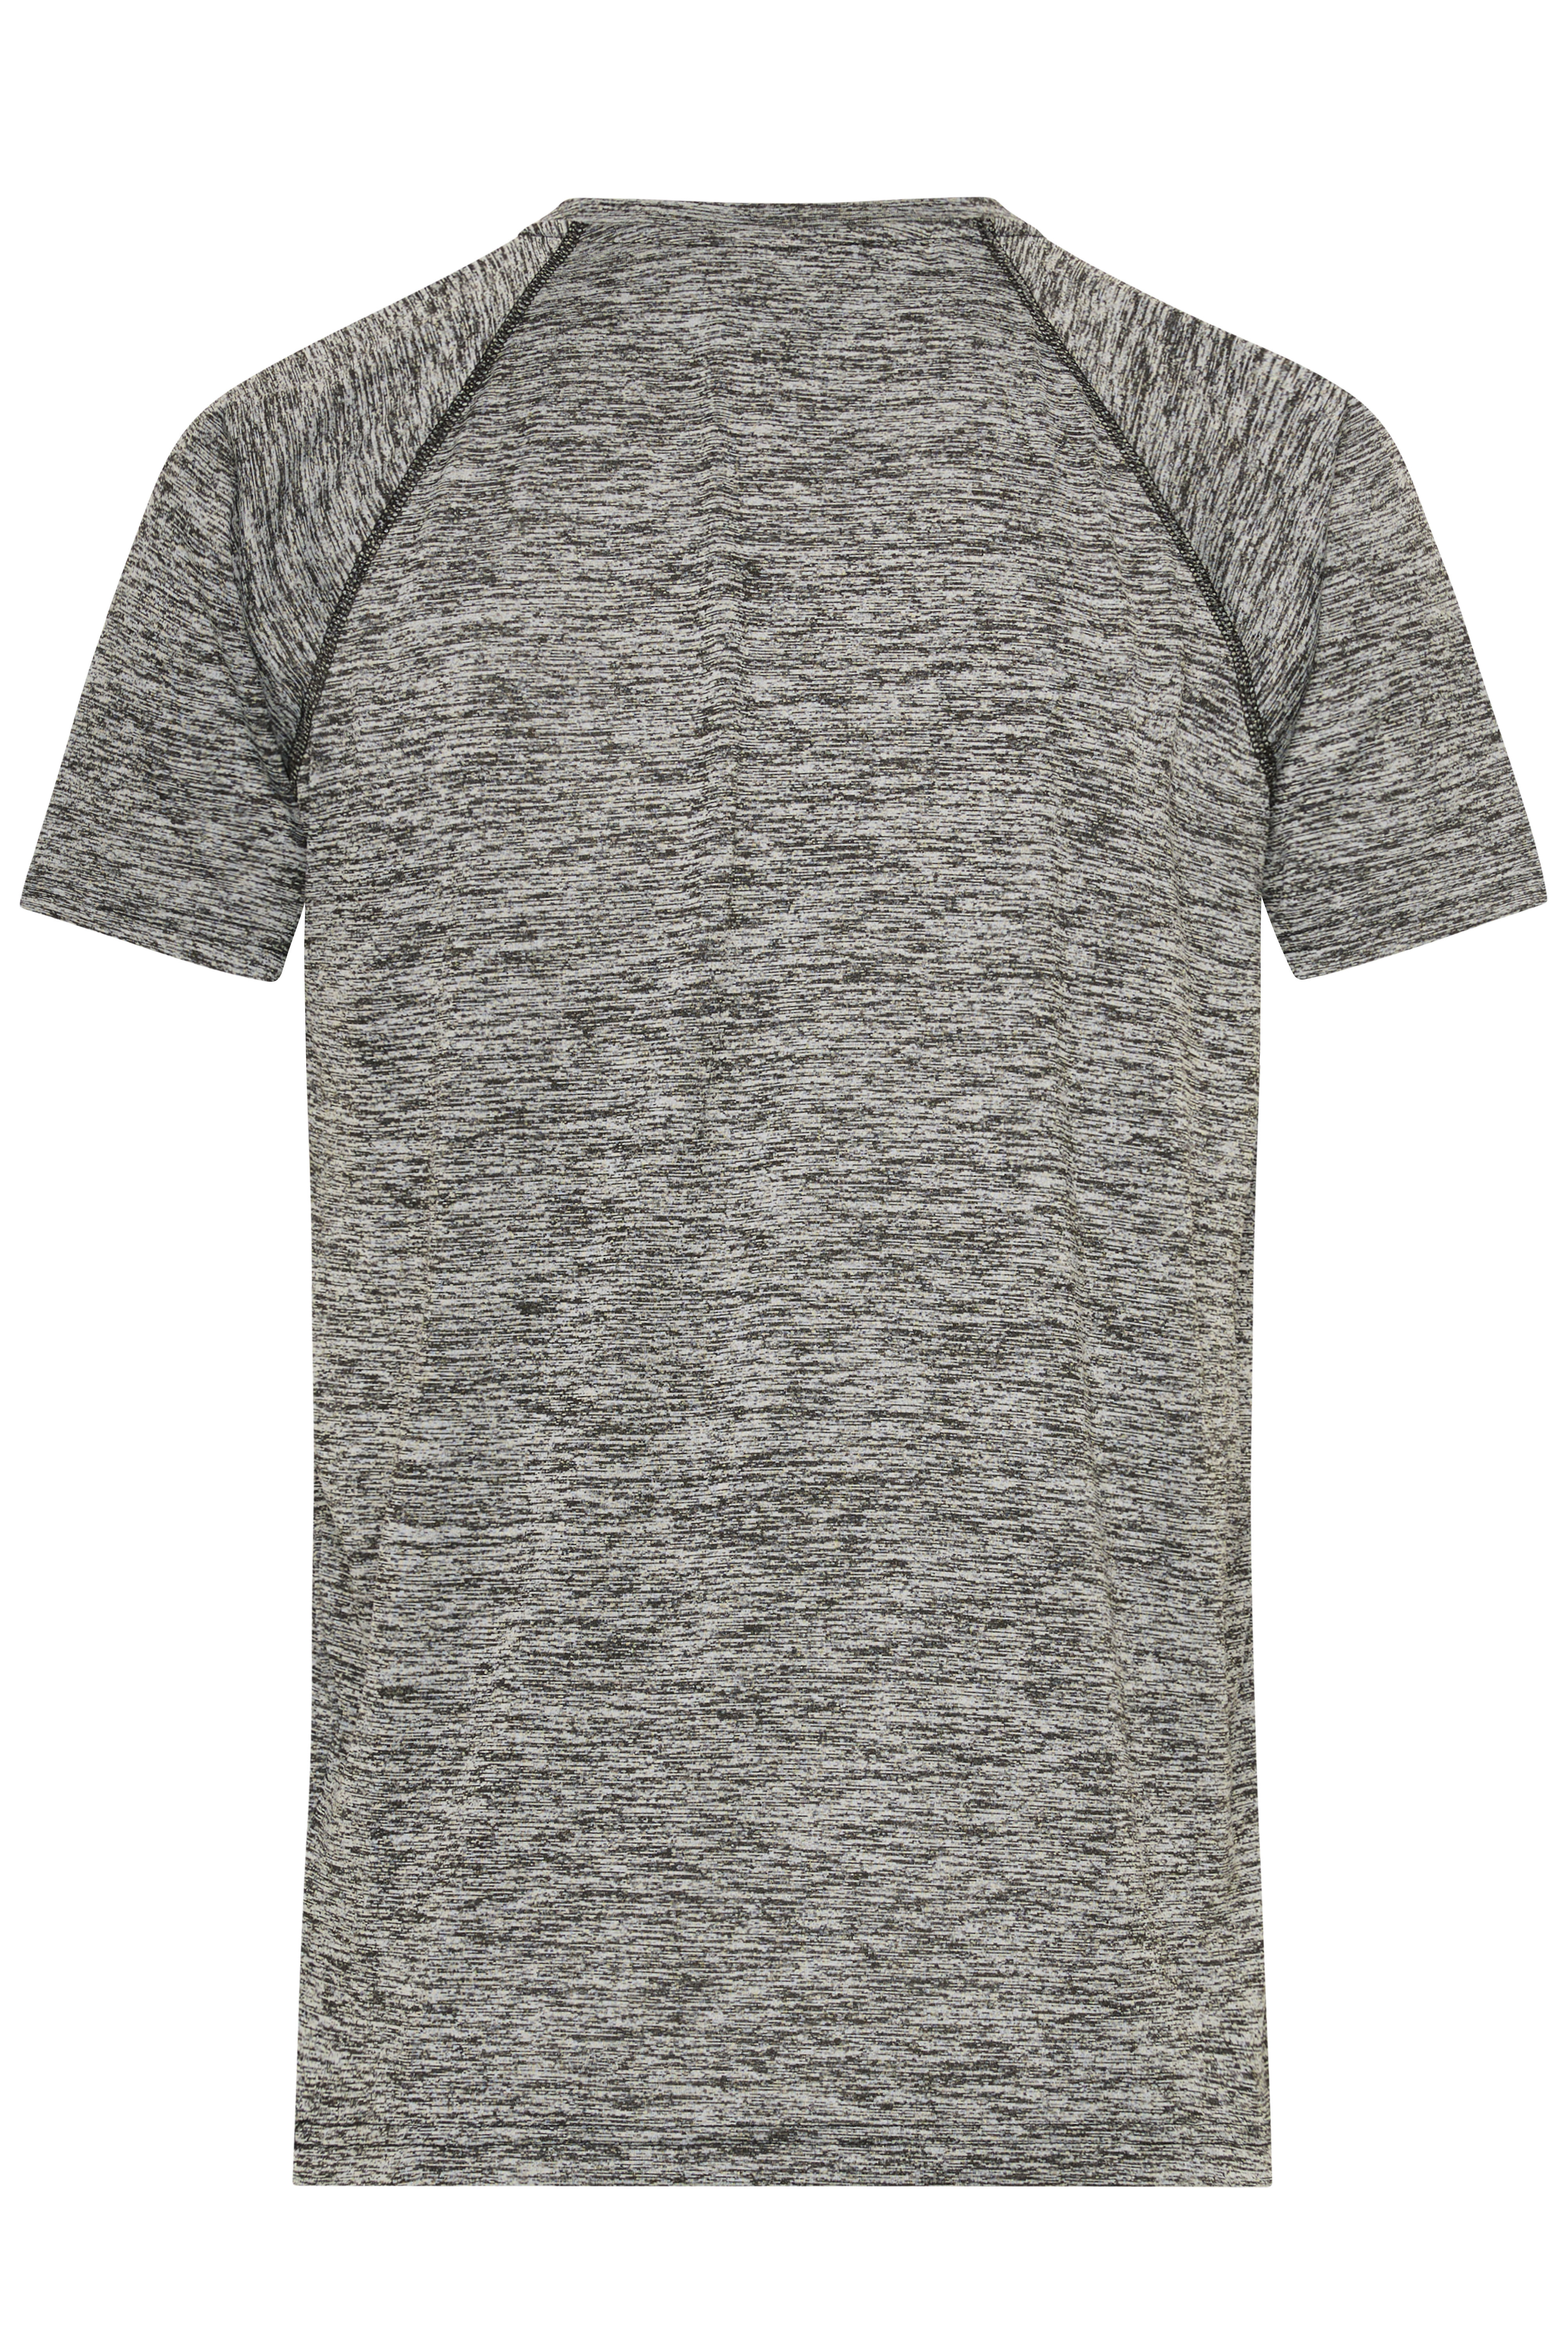 Men's Sports T-Shirt JN496 Funktions-Shirt für Fitness und Sport